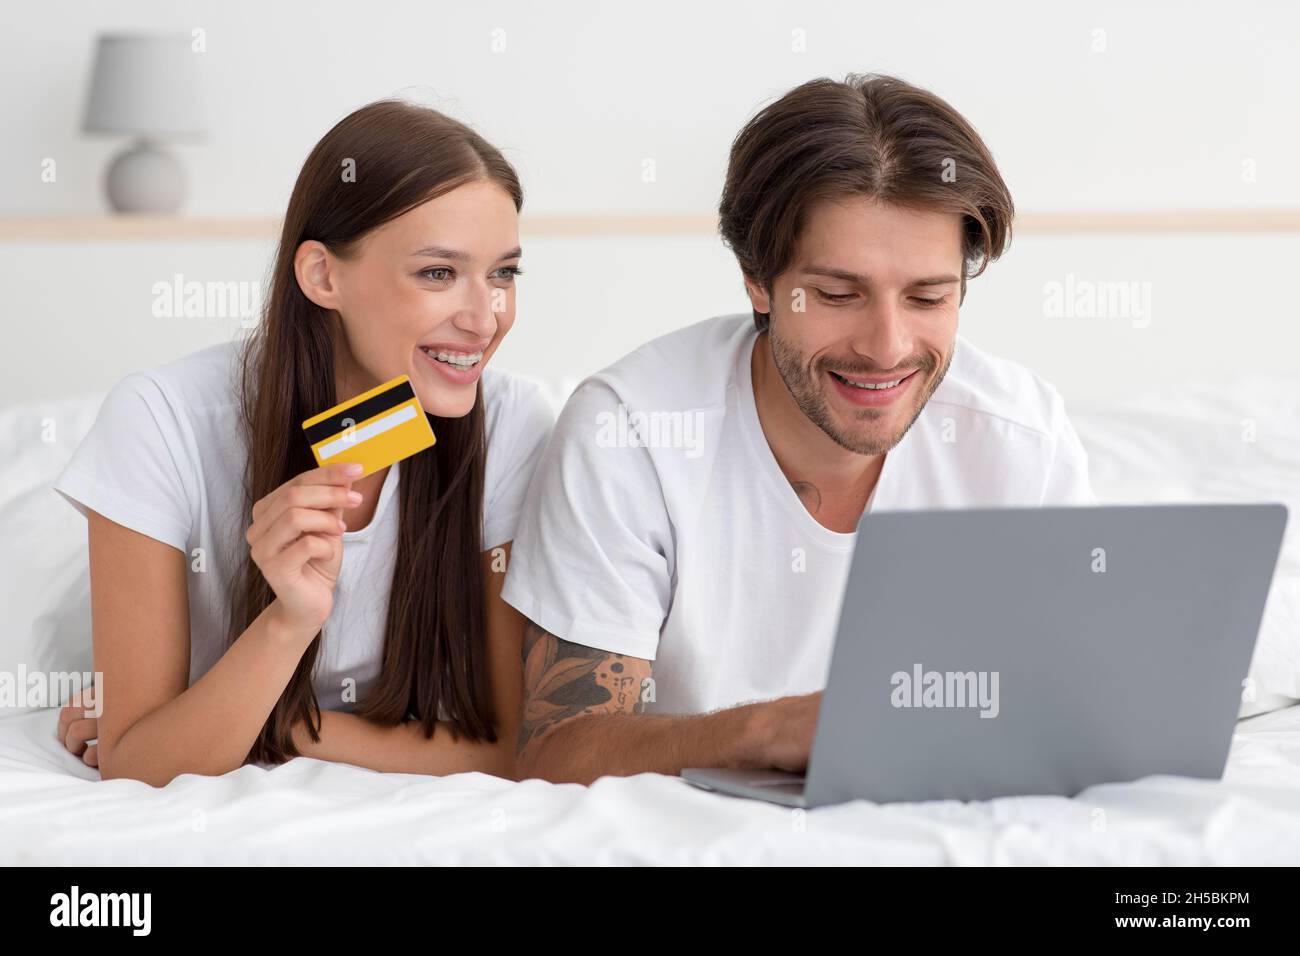 Jeune caucasien souriant homme et dame se trouvent sur le lit, payer pour l'achat et commander avec ordinateur portable et carte de crédit Banque D'Images